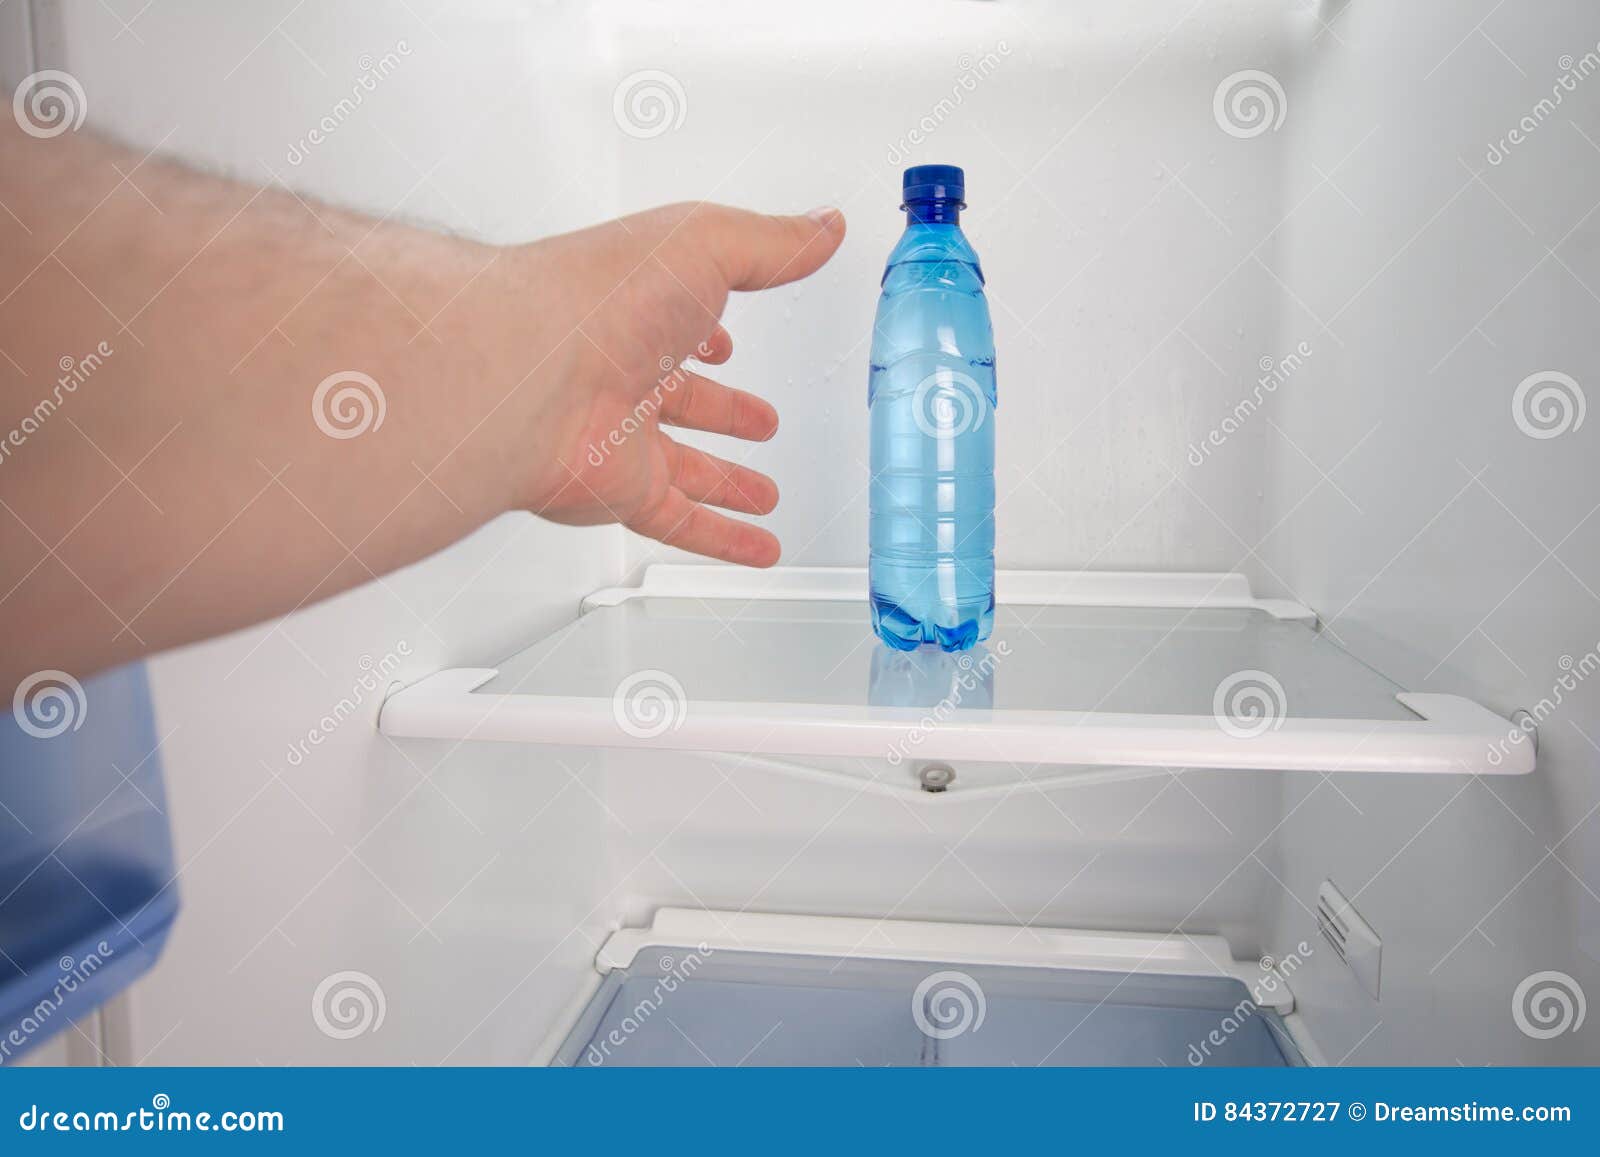 Вода в холодильнике причины. Холодильник для воды. Холодильник/минералка. Лоток для воды в холодильнике. Холодильник с холодной водой.